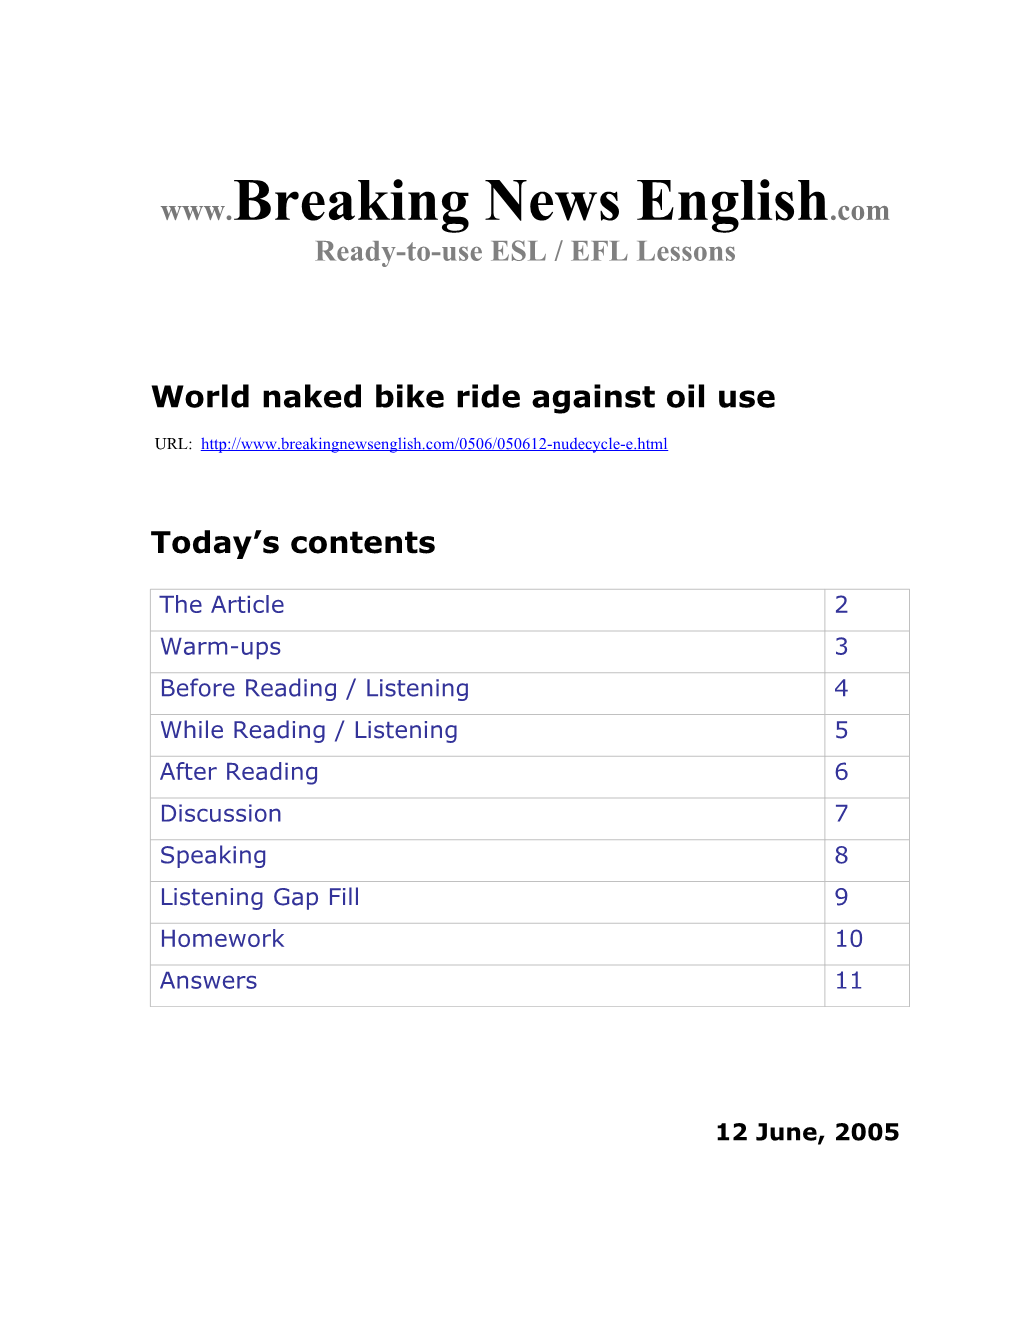 World Naked Bike Ride Against Oil Use